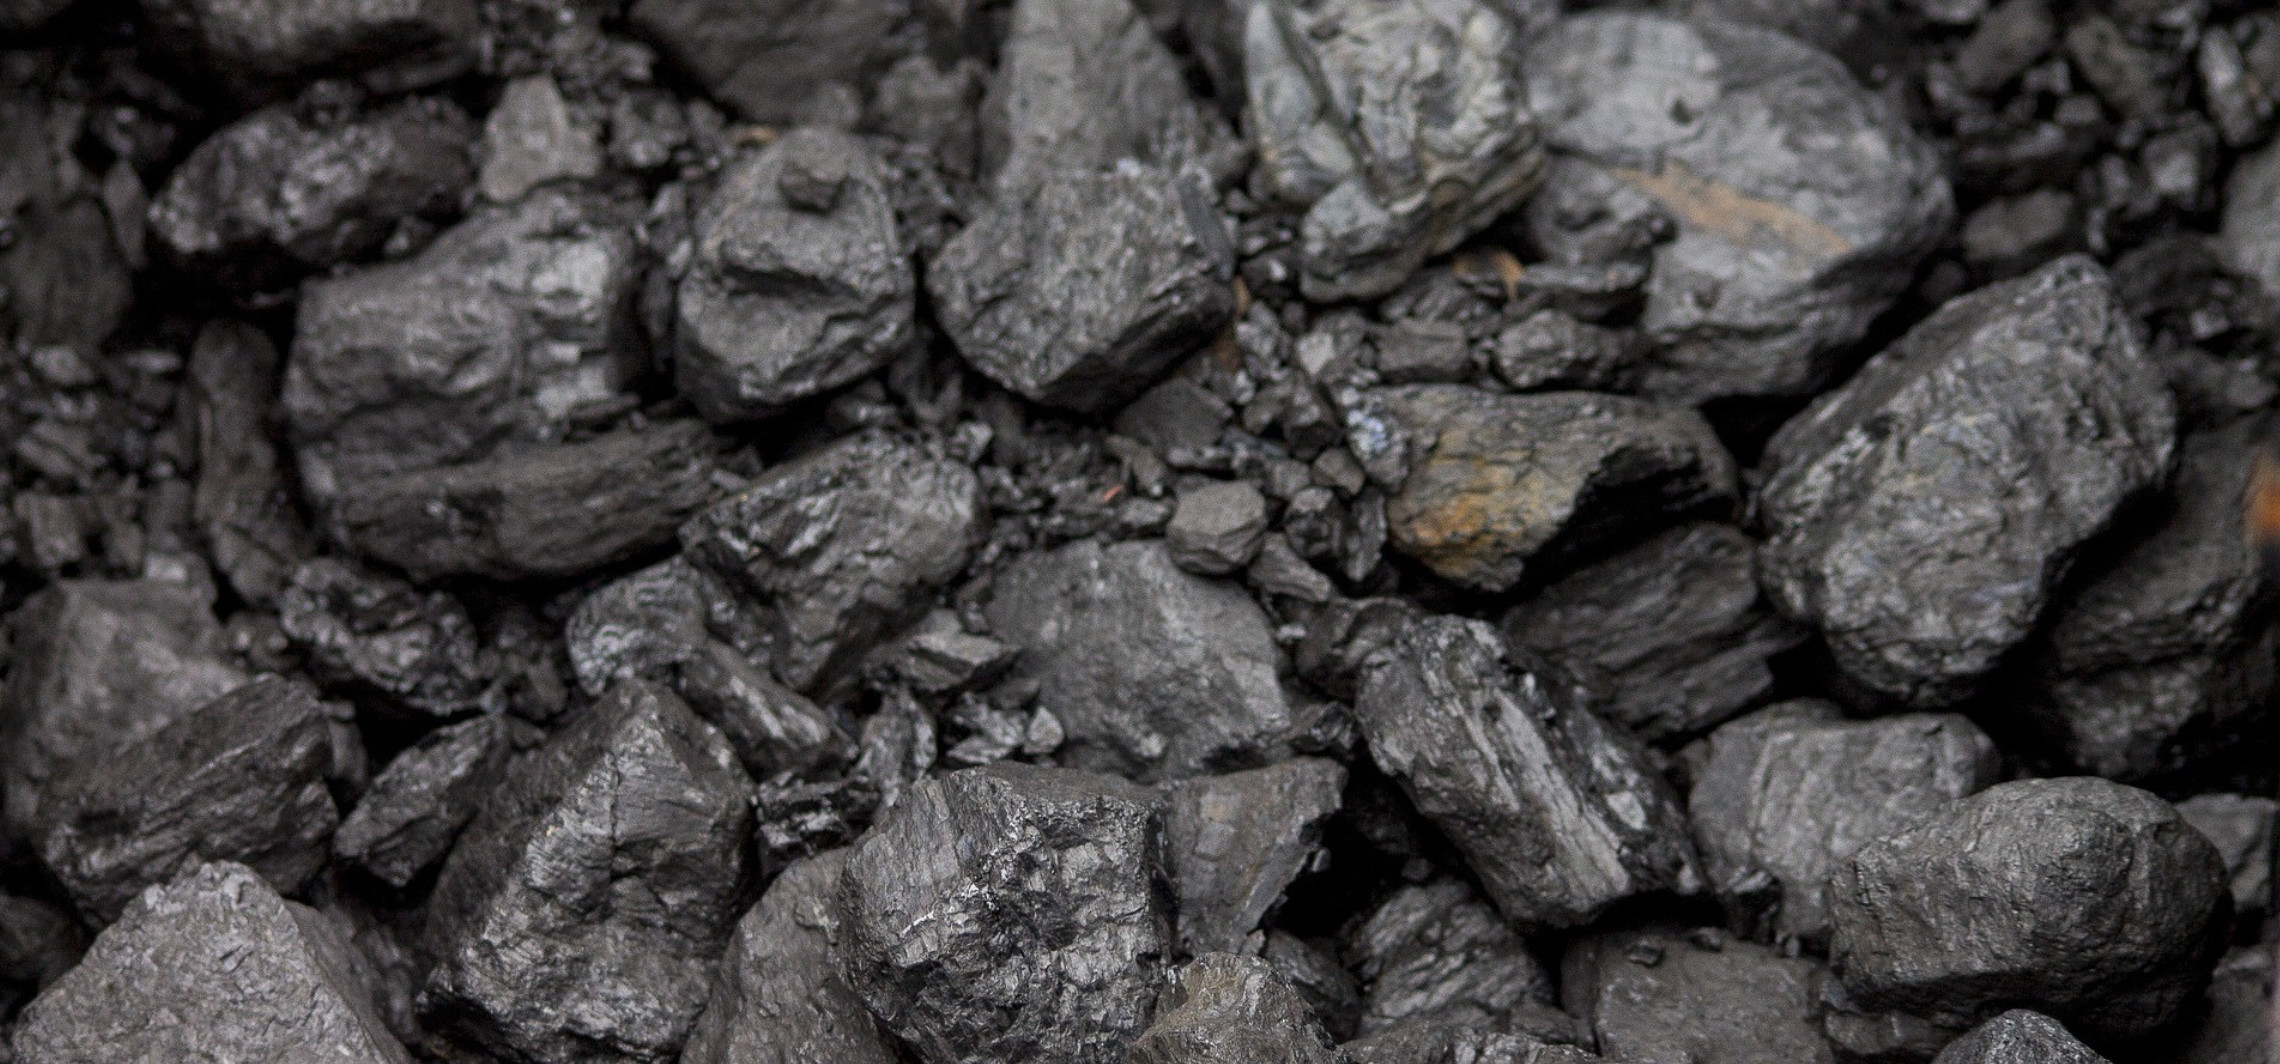 Inowrocław - Ruszyła sprzedaż węgla po preferencyjnej cenie